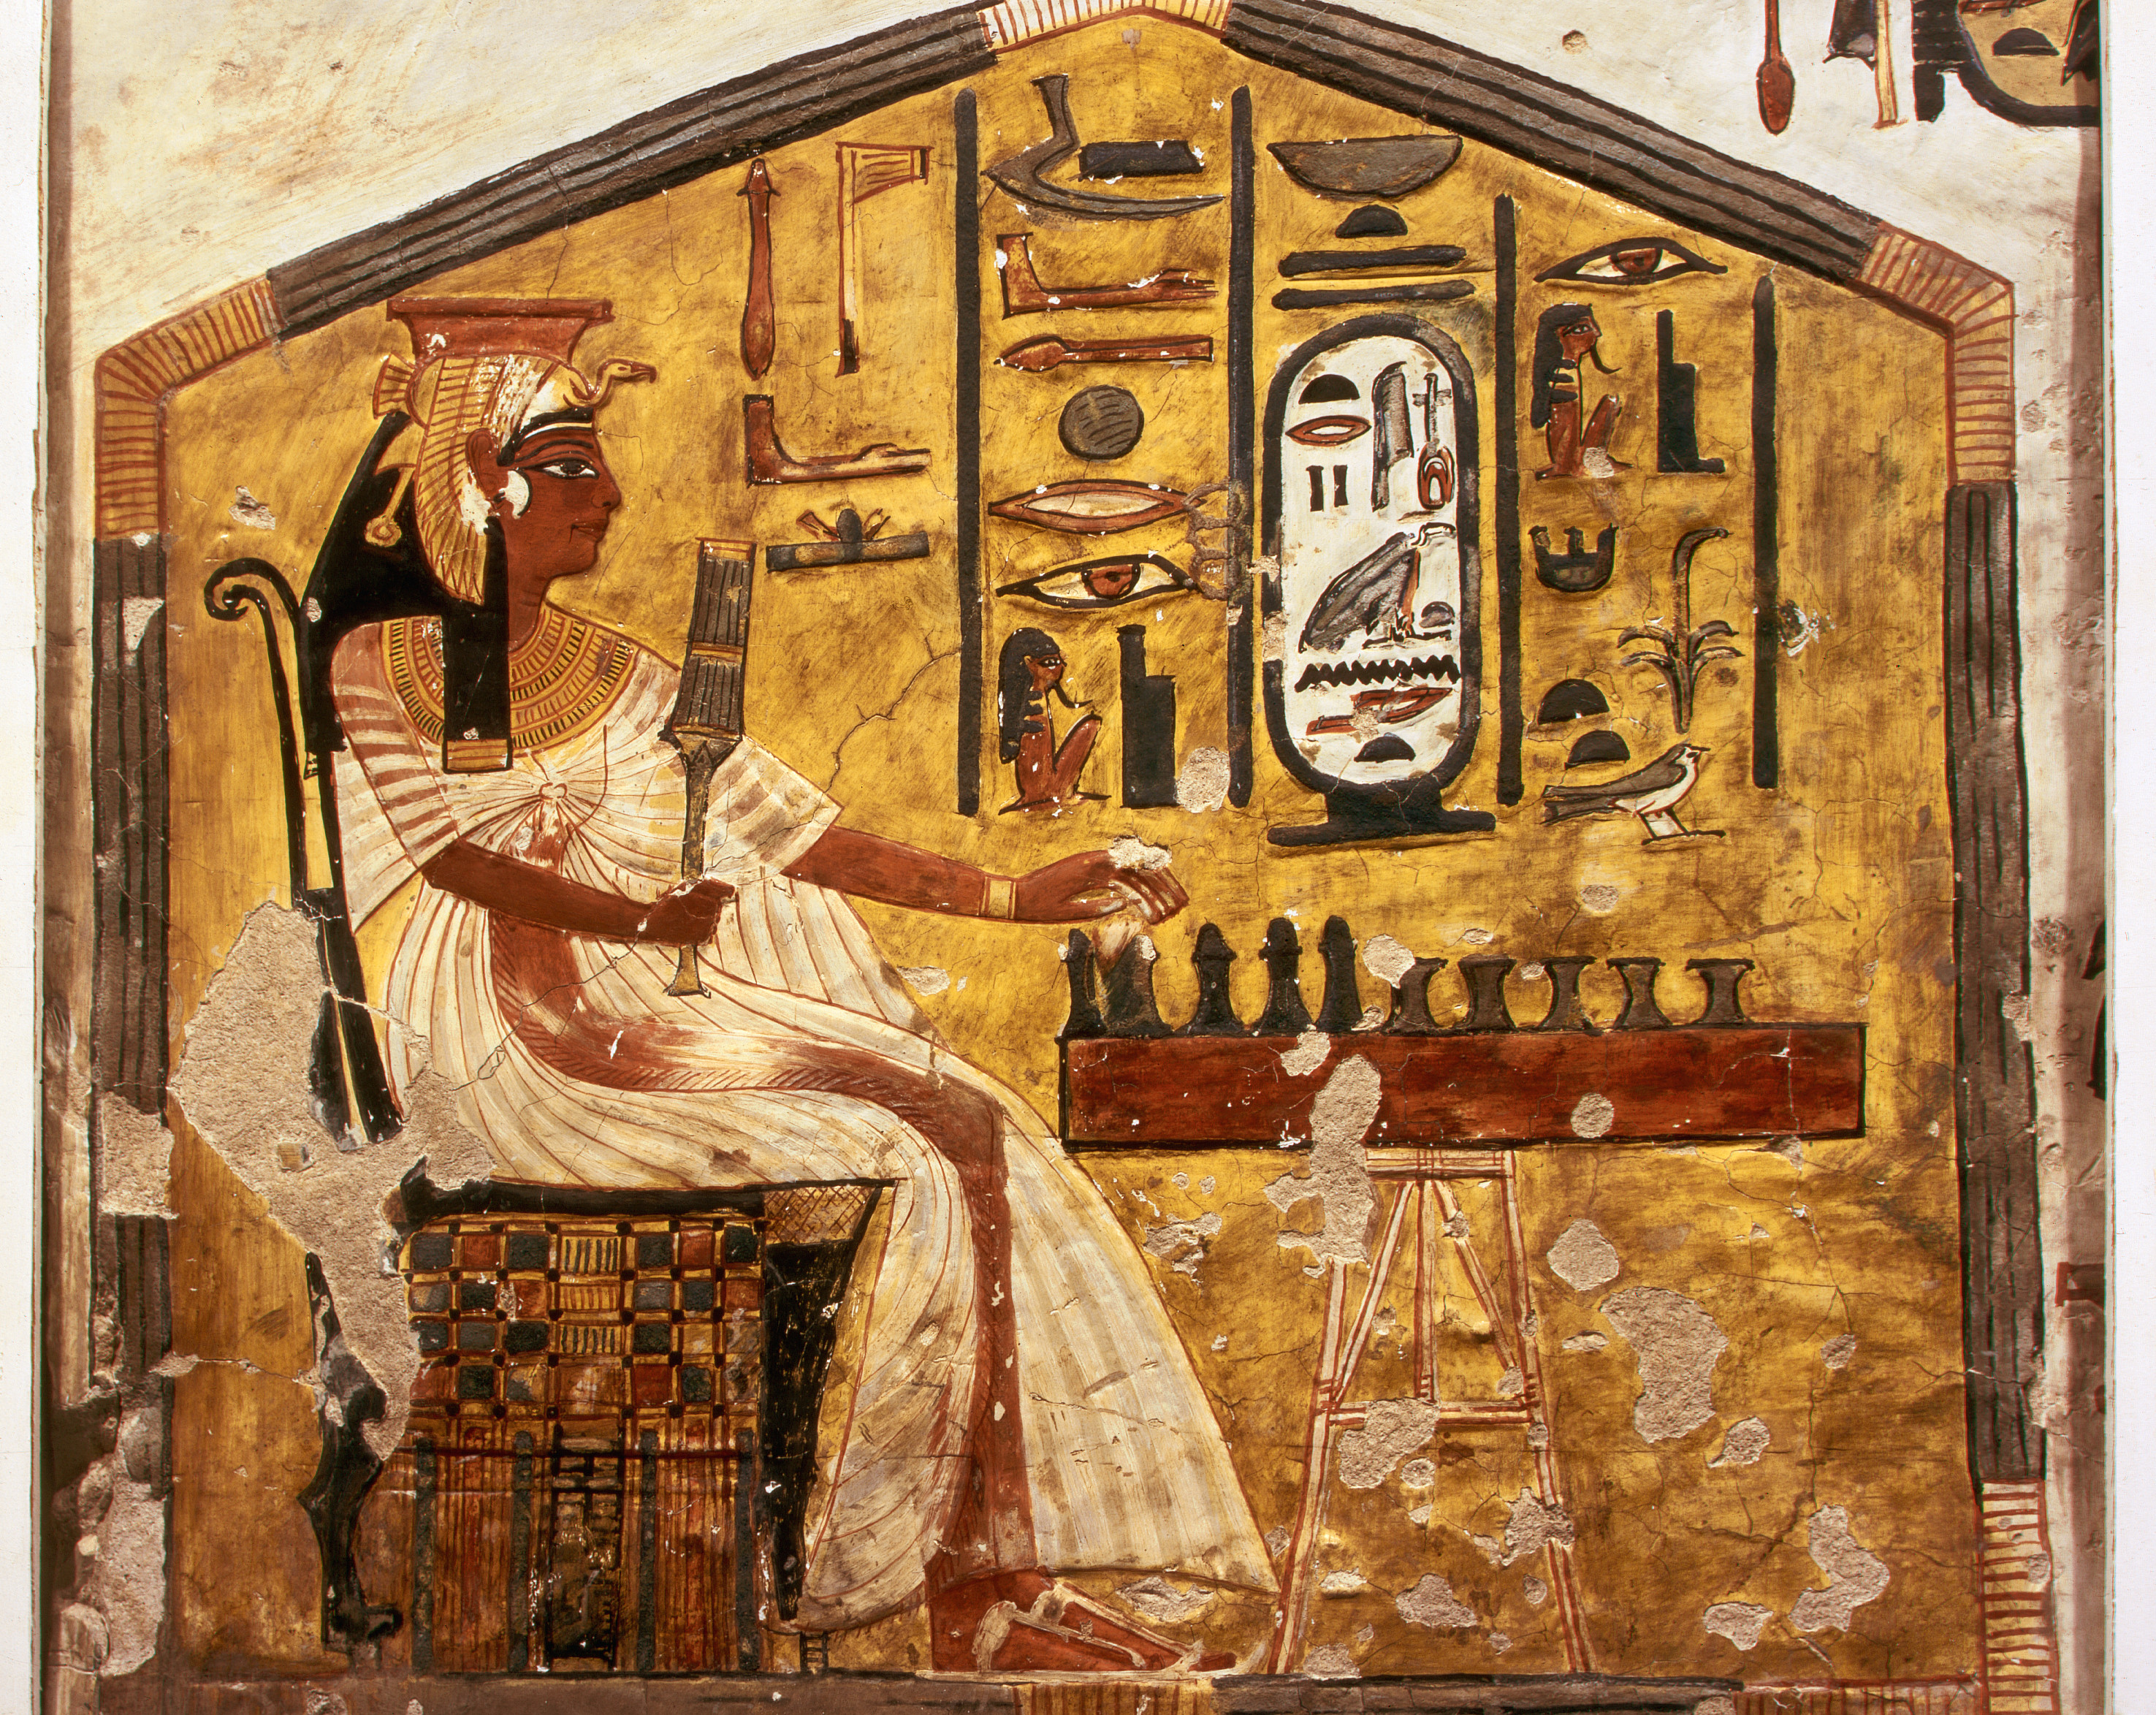 Królowa Grająca w Seneta by Unknown Artist - około 1255 p.n.e. 